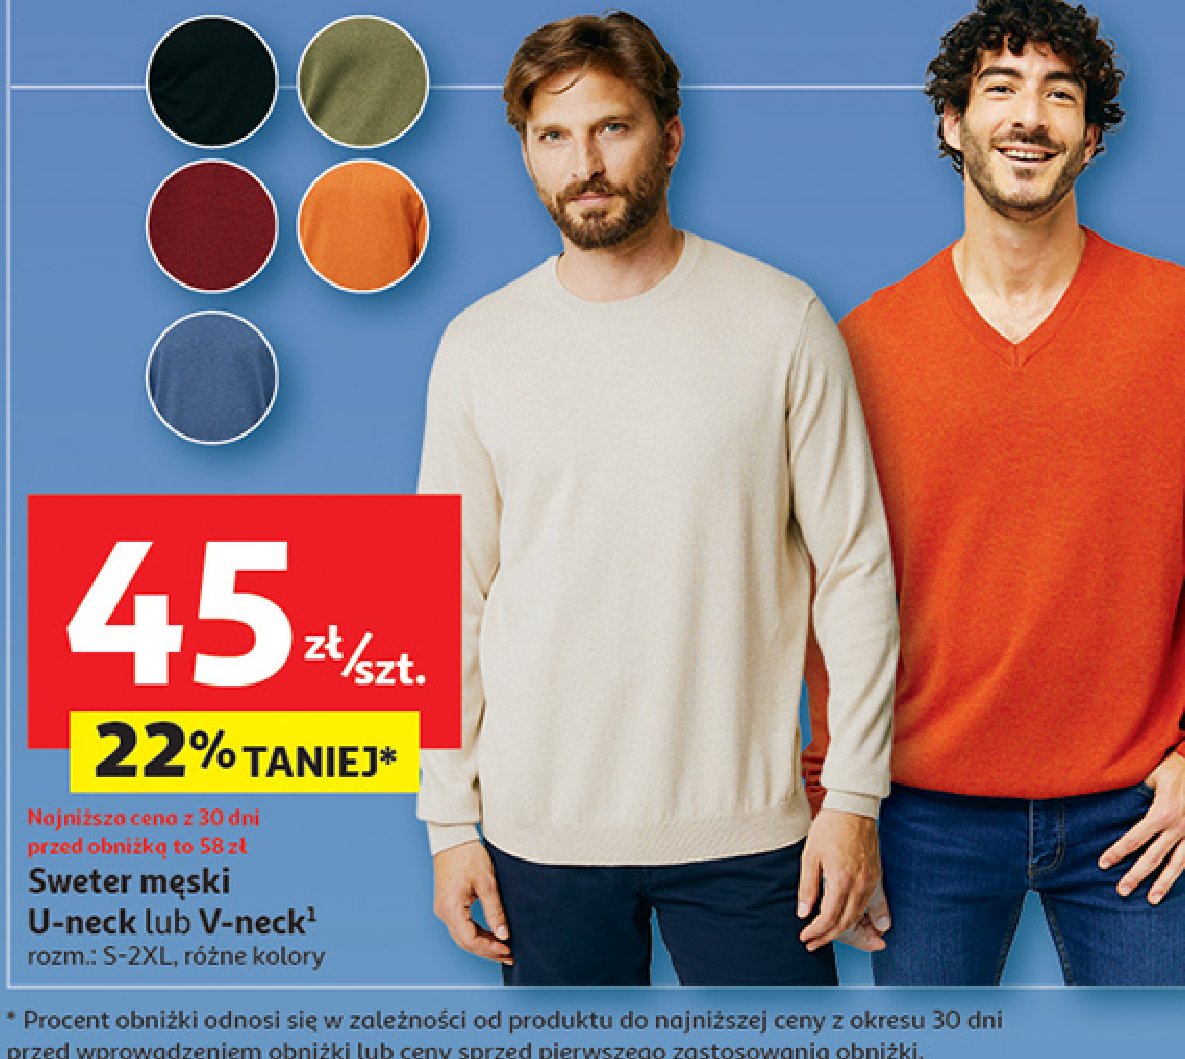 Sweter męski u-neck s-xxl Auchan inextenso promocja